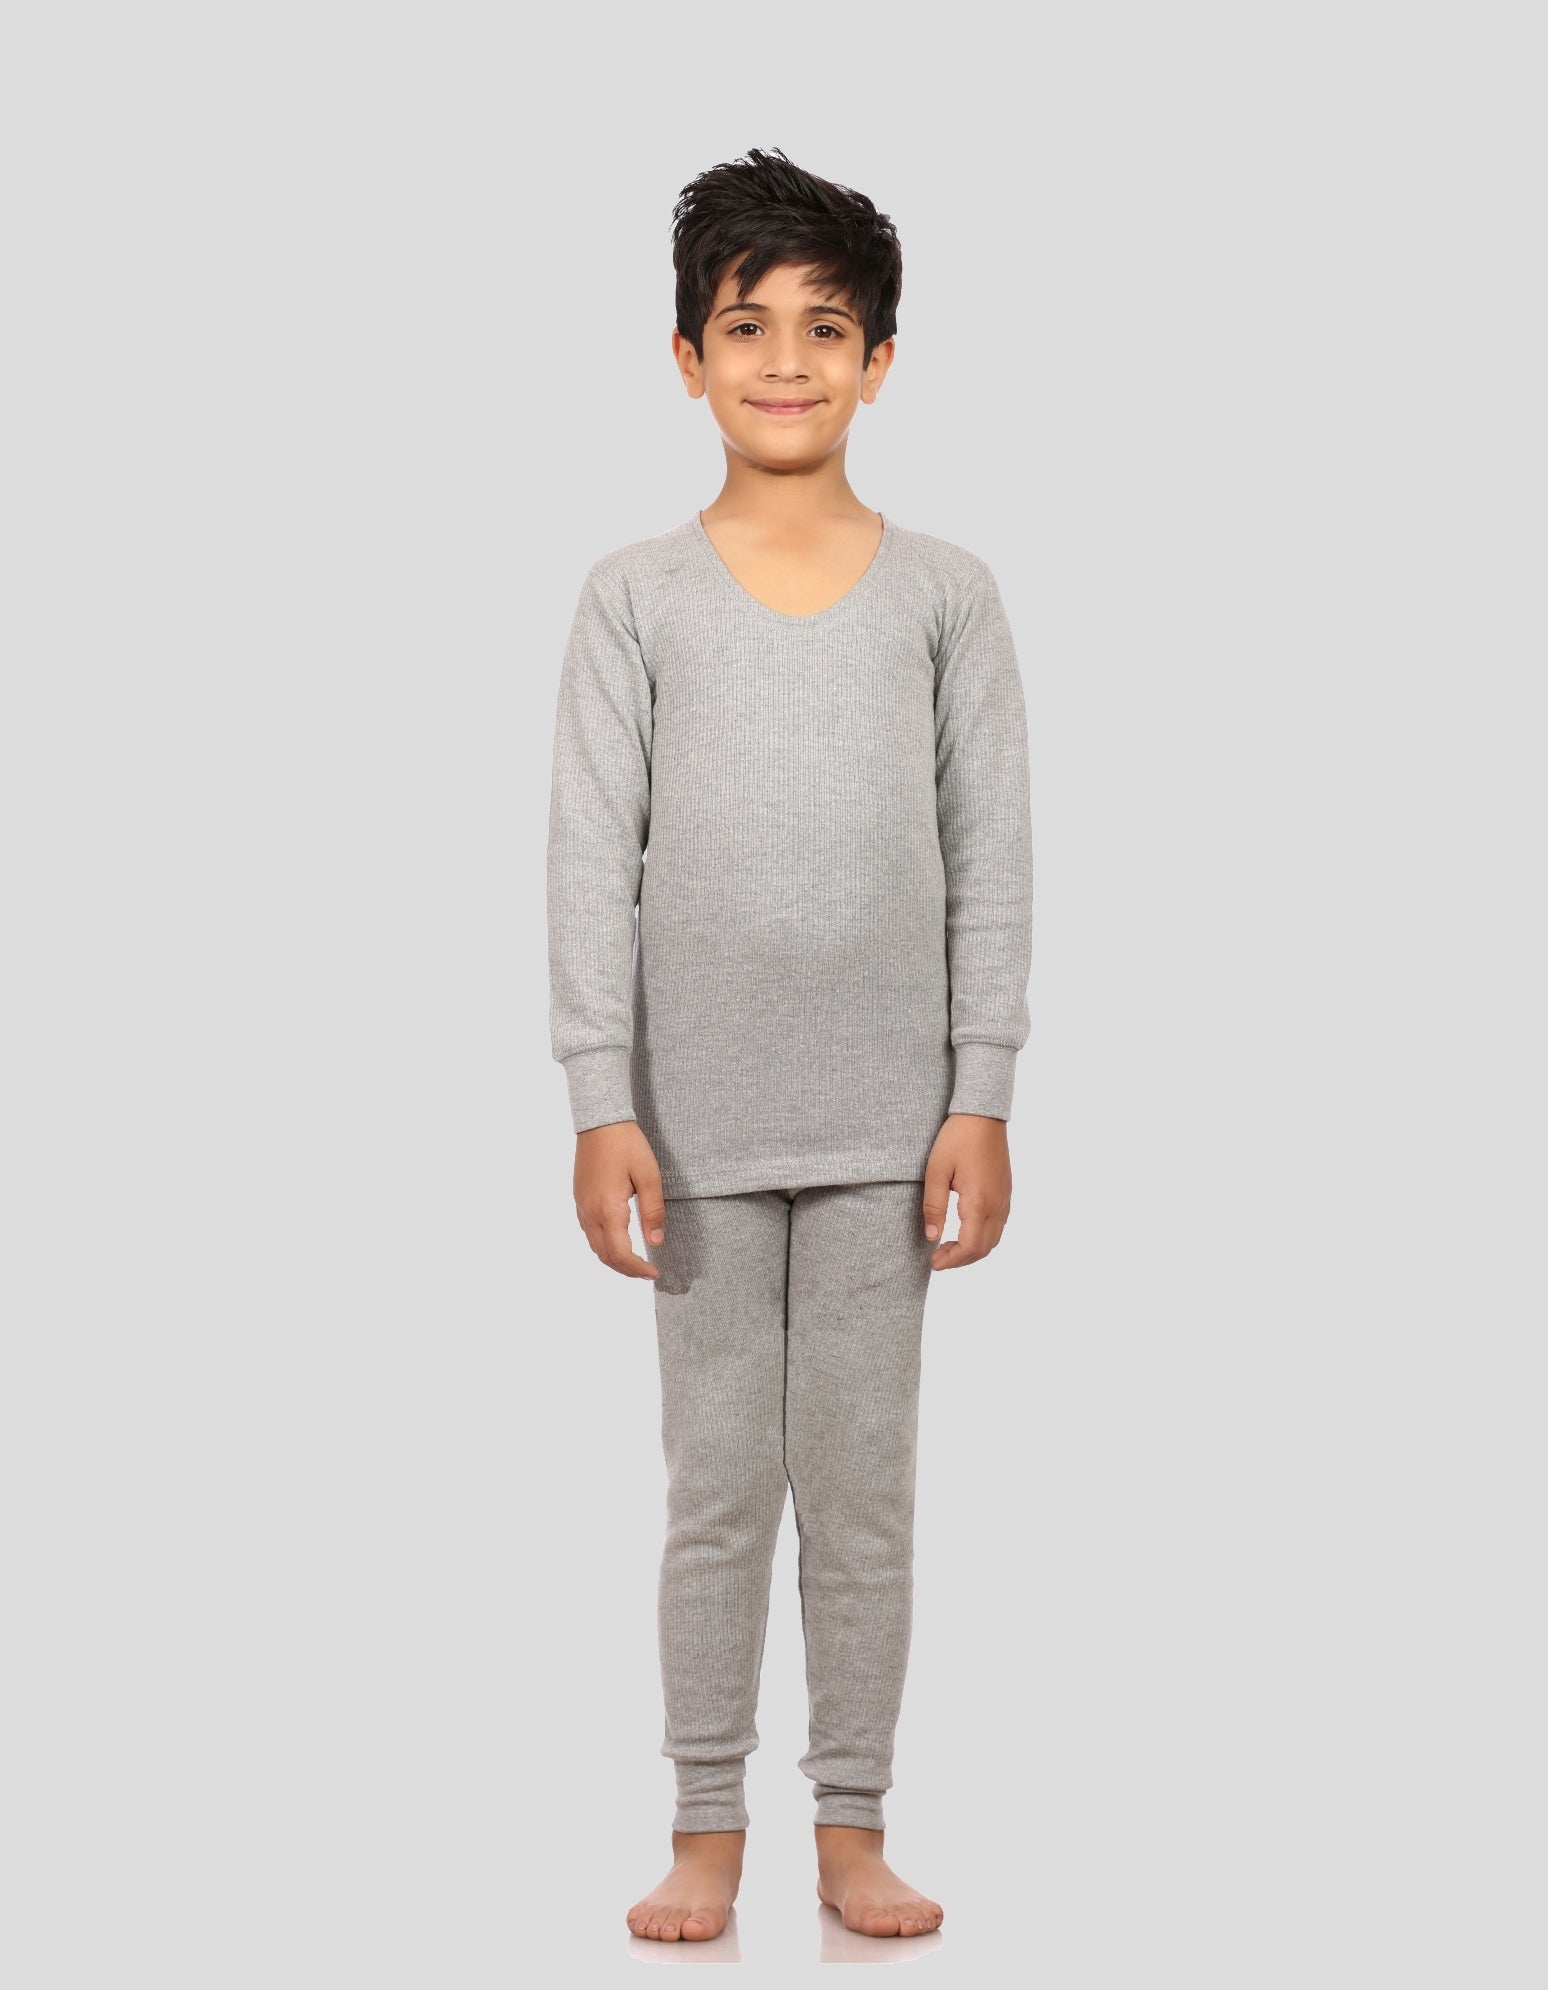 Neva Velveti Scoop Neck Full Sleeves Upper and Lower Warmer/Thermal Upper for Kids Unisex (For Boys and Girls)-Milange Grey